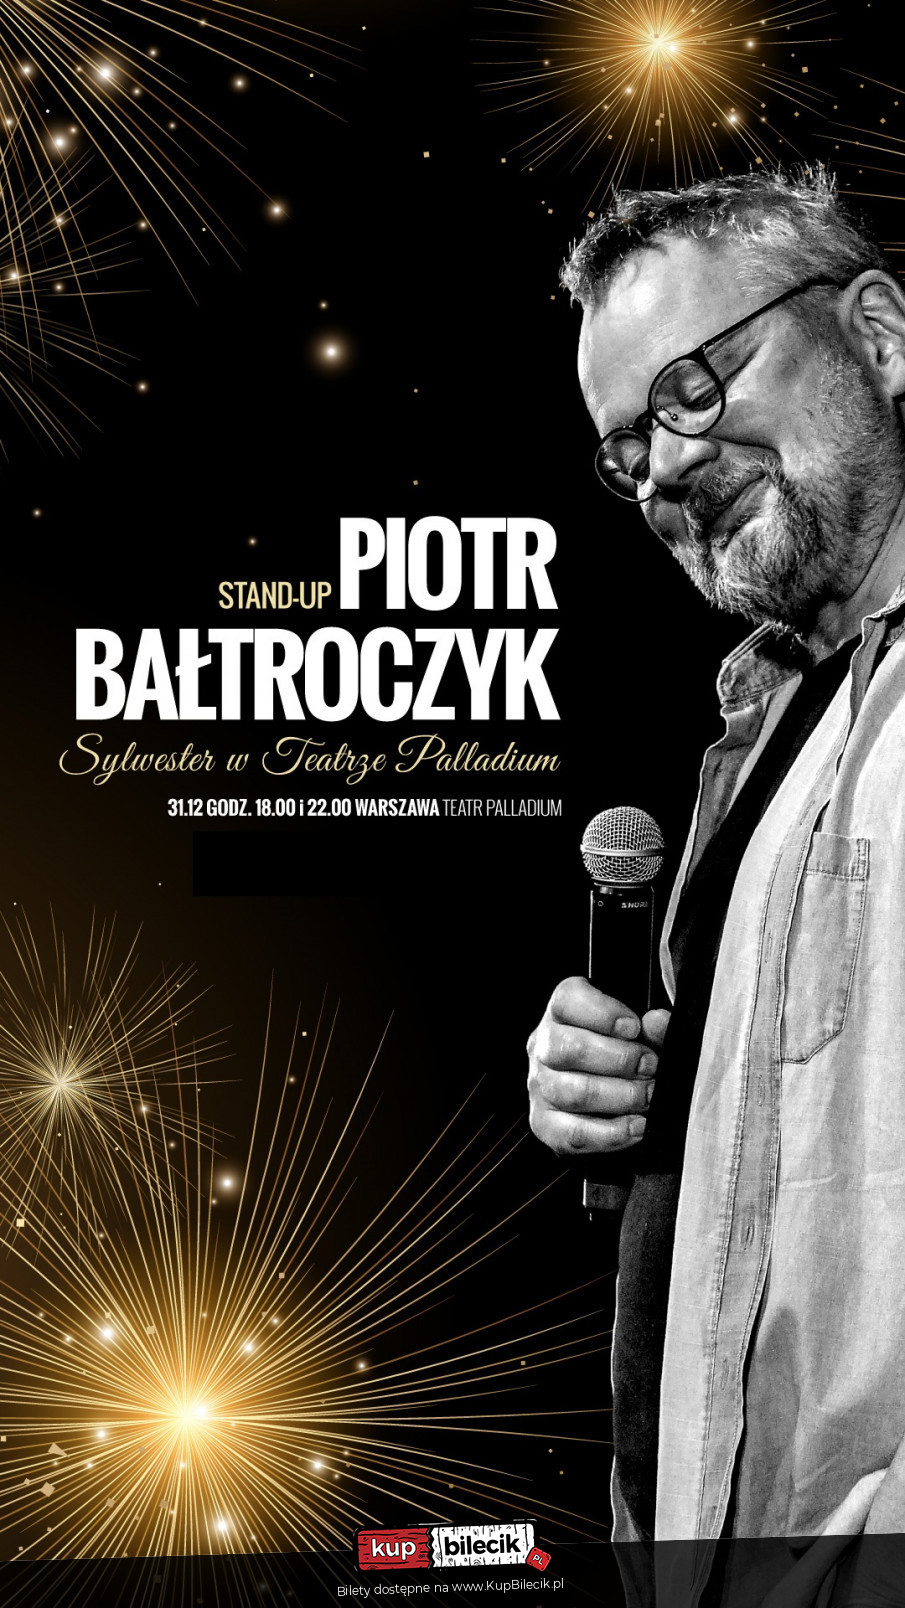 Plakat Piotr Bałtroczyk 104291